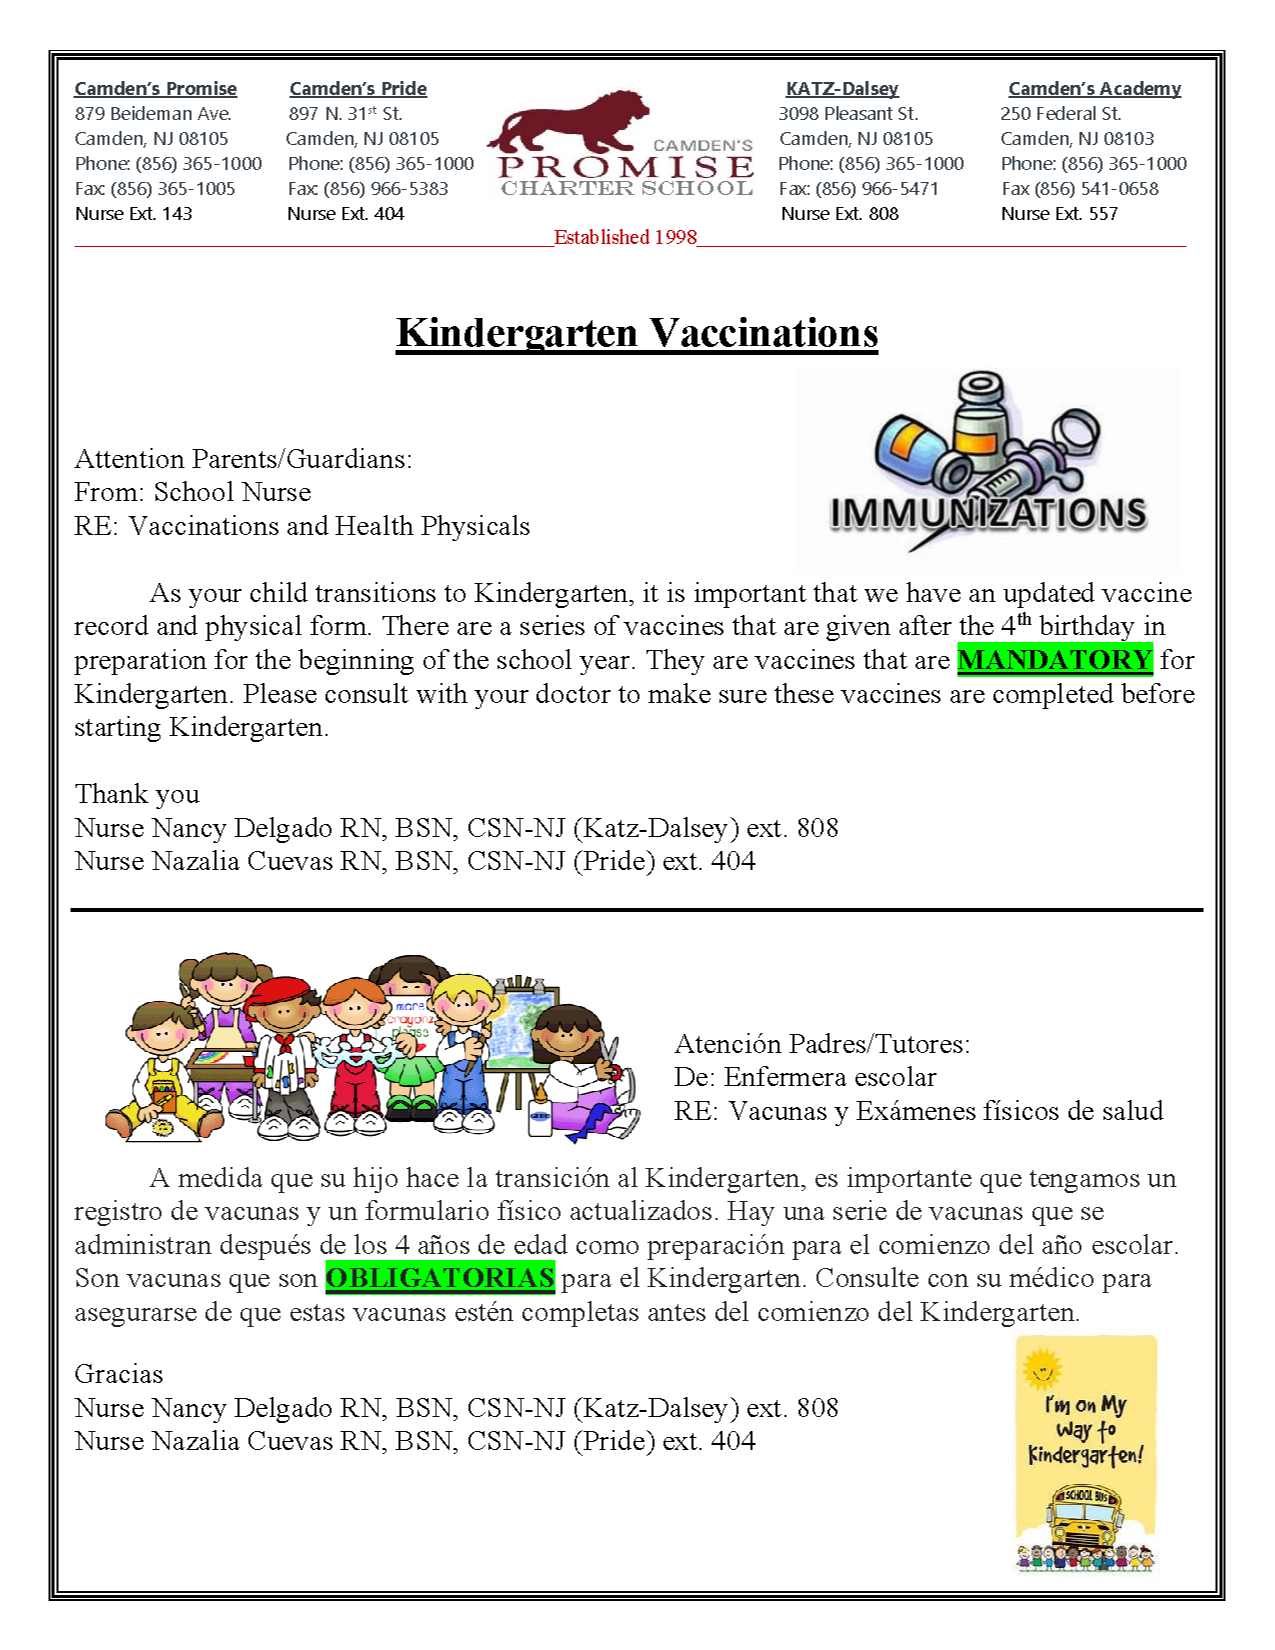 Pre-K Kindergarten Vaccinations